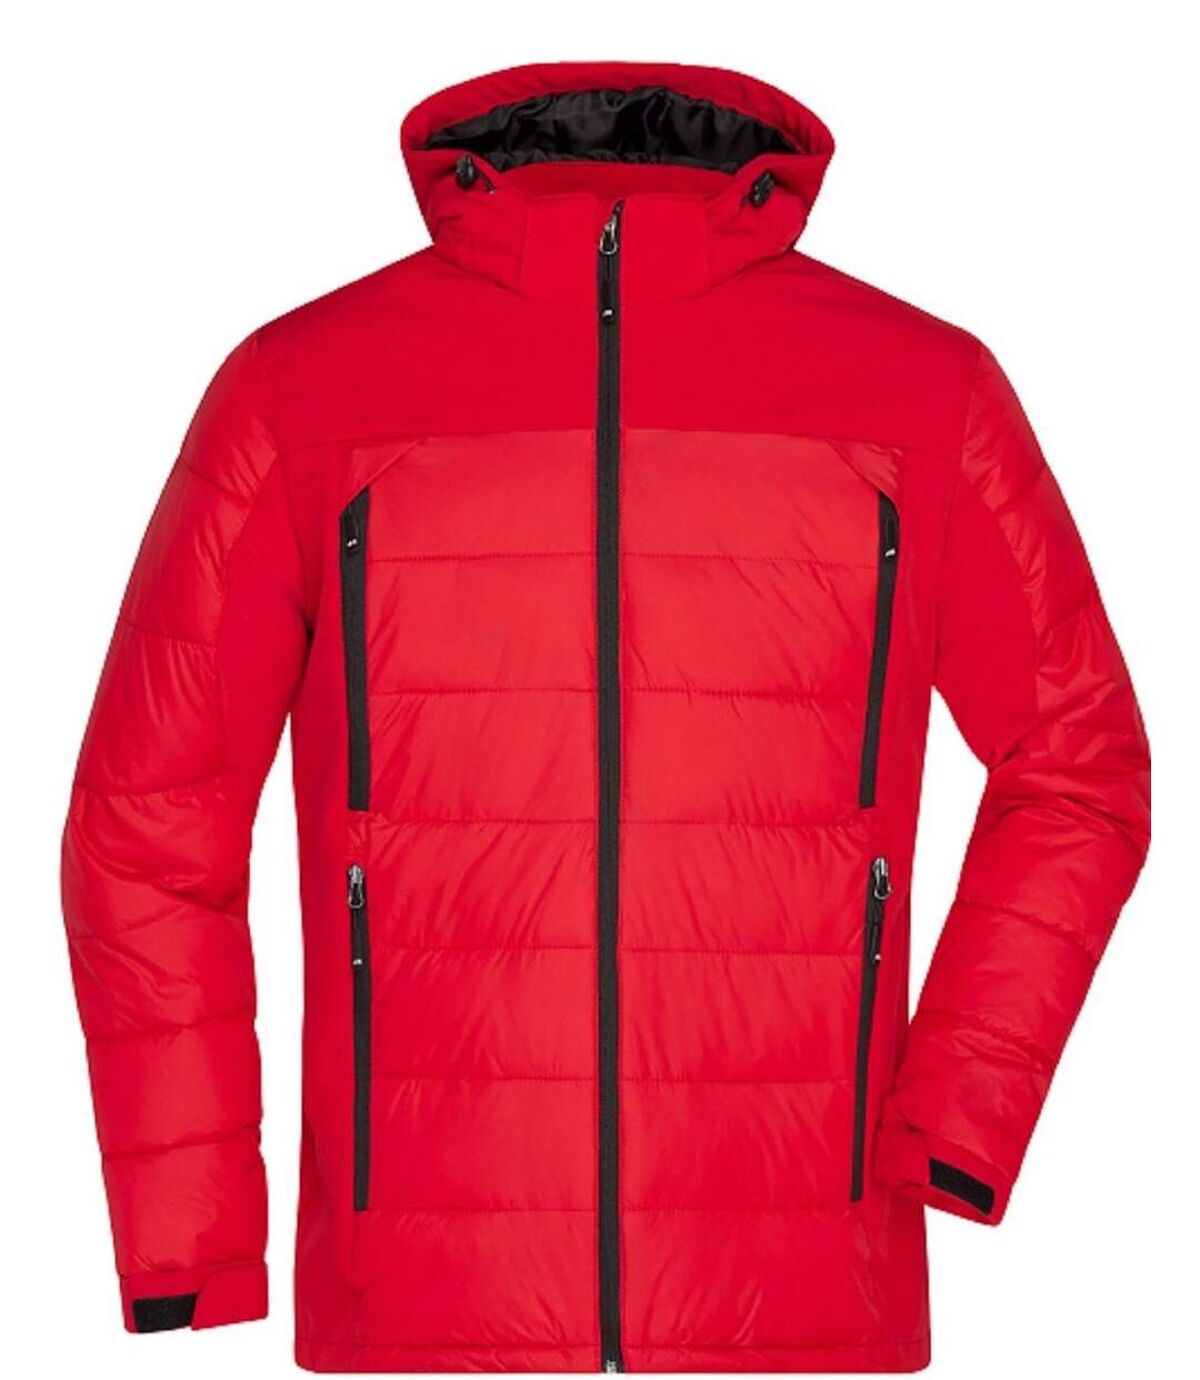 Veste matelassée Homme anorak ski / neige - JN1050 - rouge